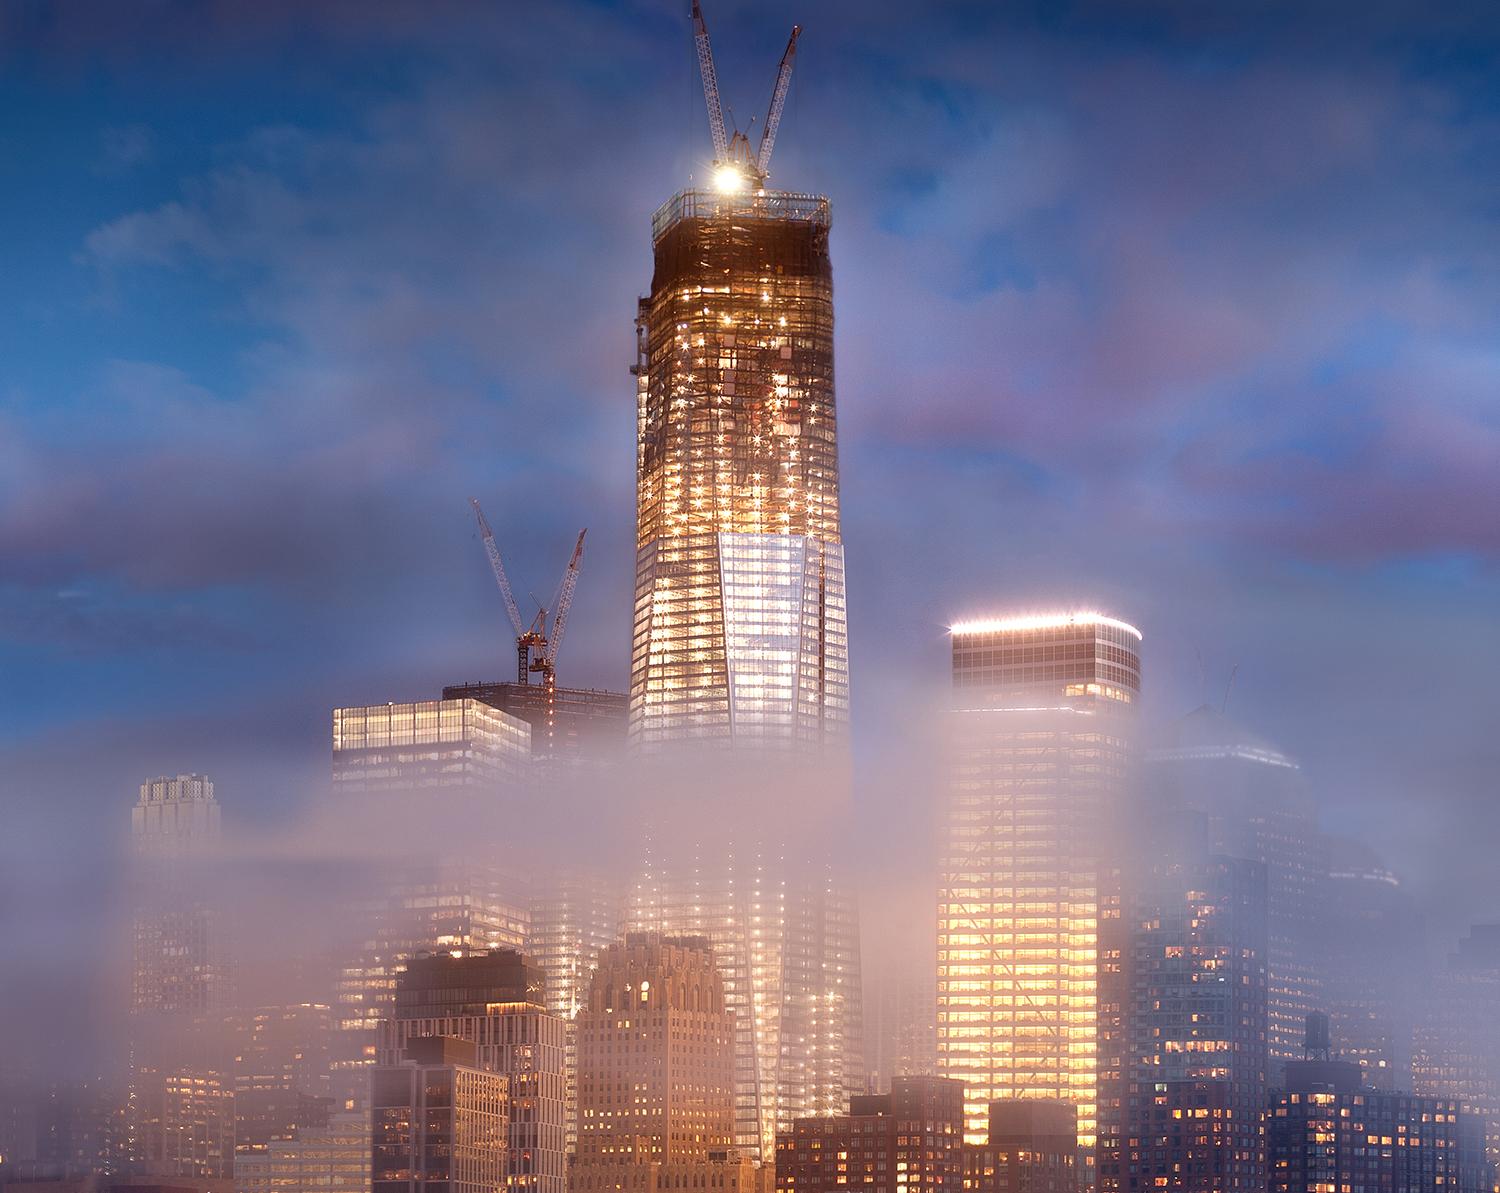 One World Trade Center 11 (Panoramiklandschaft mit Farbdruck des Freedom Tower) – Photograph von James Bleecker